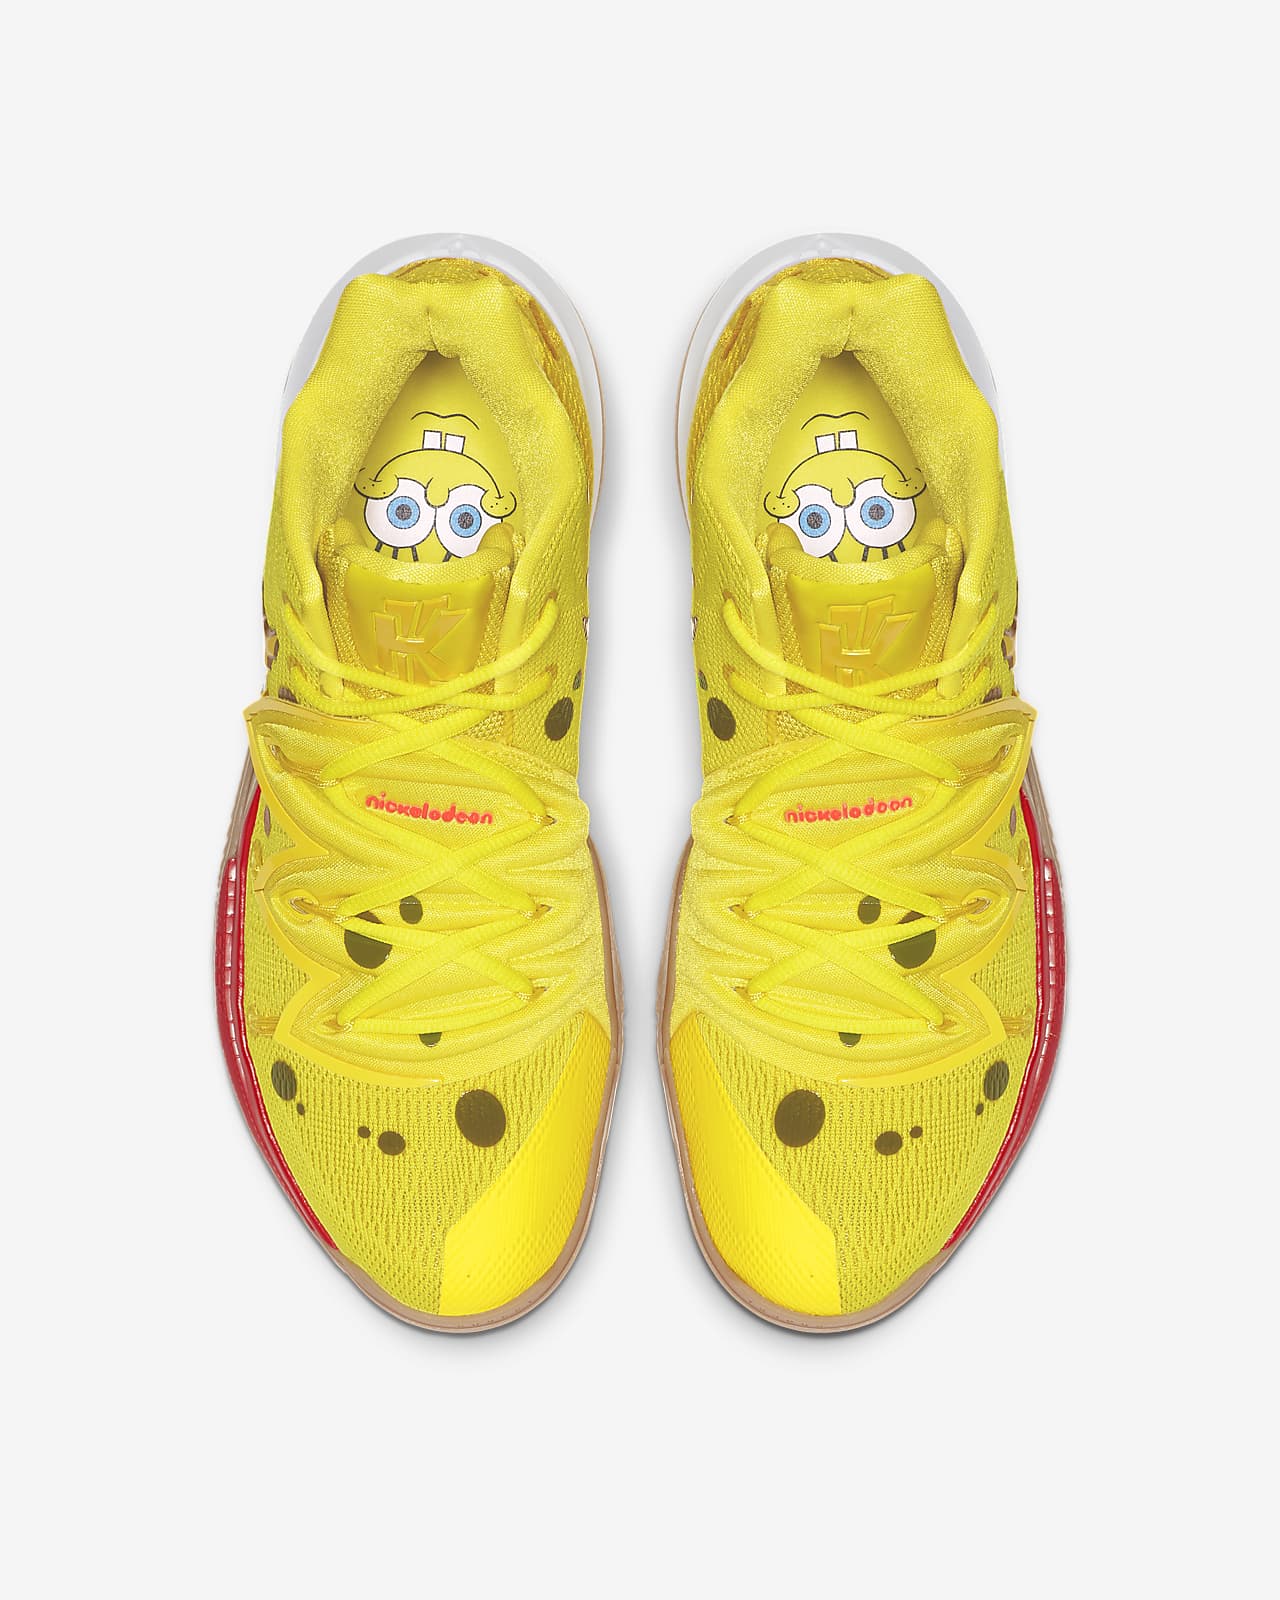 spongebob shoes for boys